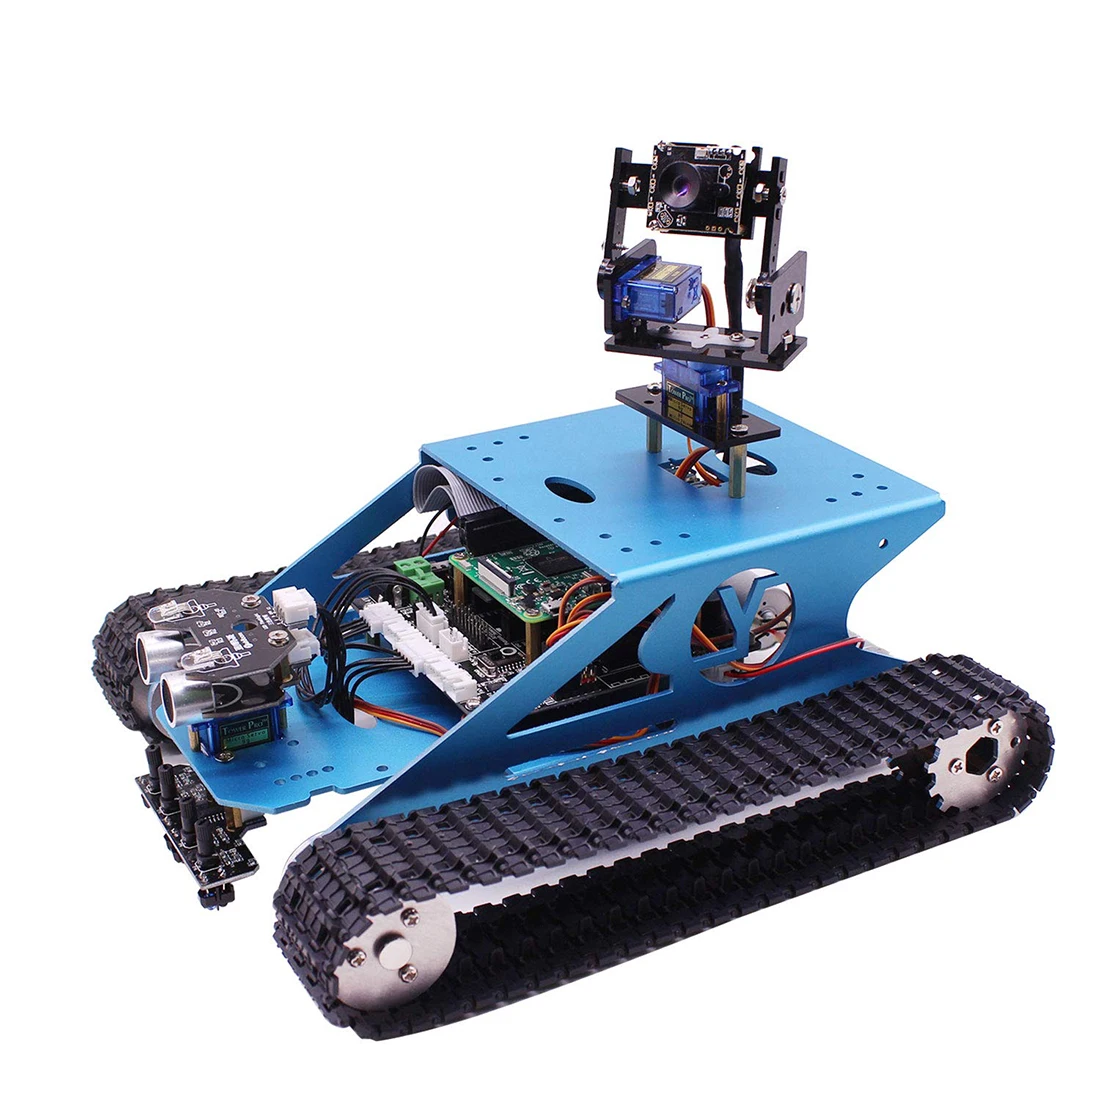 Raspberry Pi Танк умный робот комплект Wi-Fi беспроводной видео Программирование электронная игрушка DIY робот комплект для детей взрослых